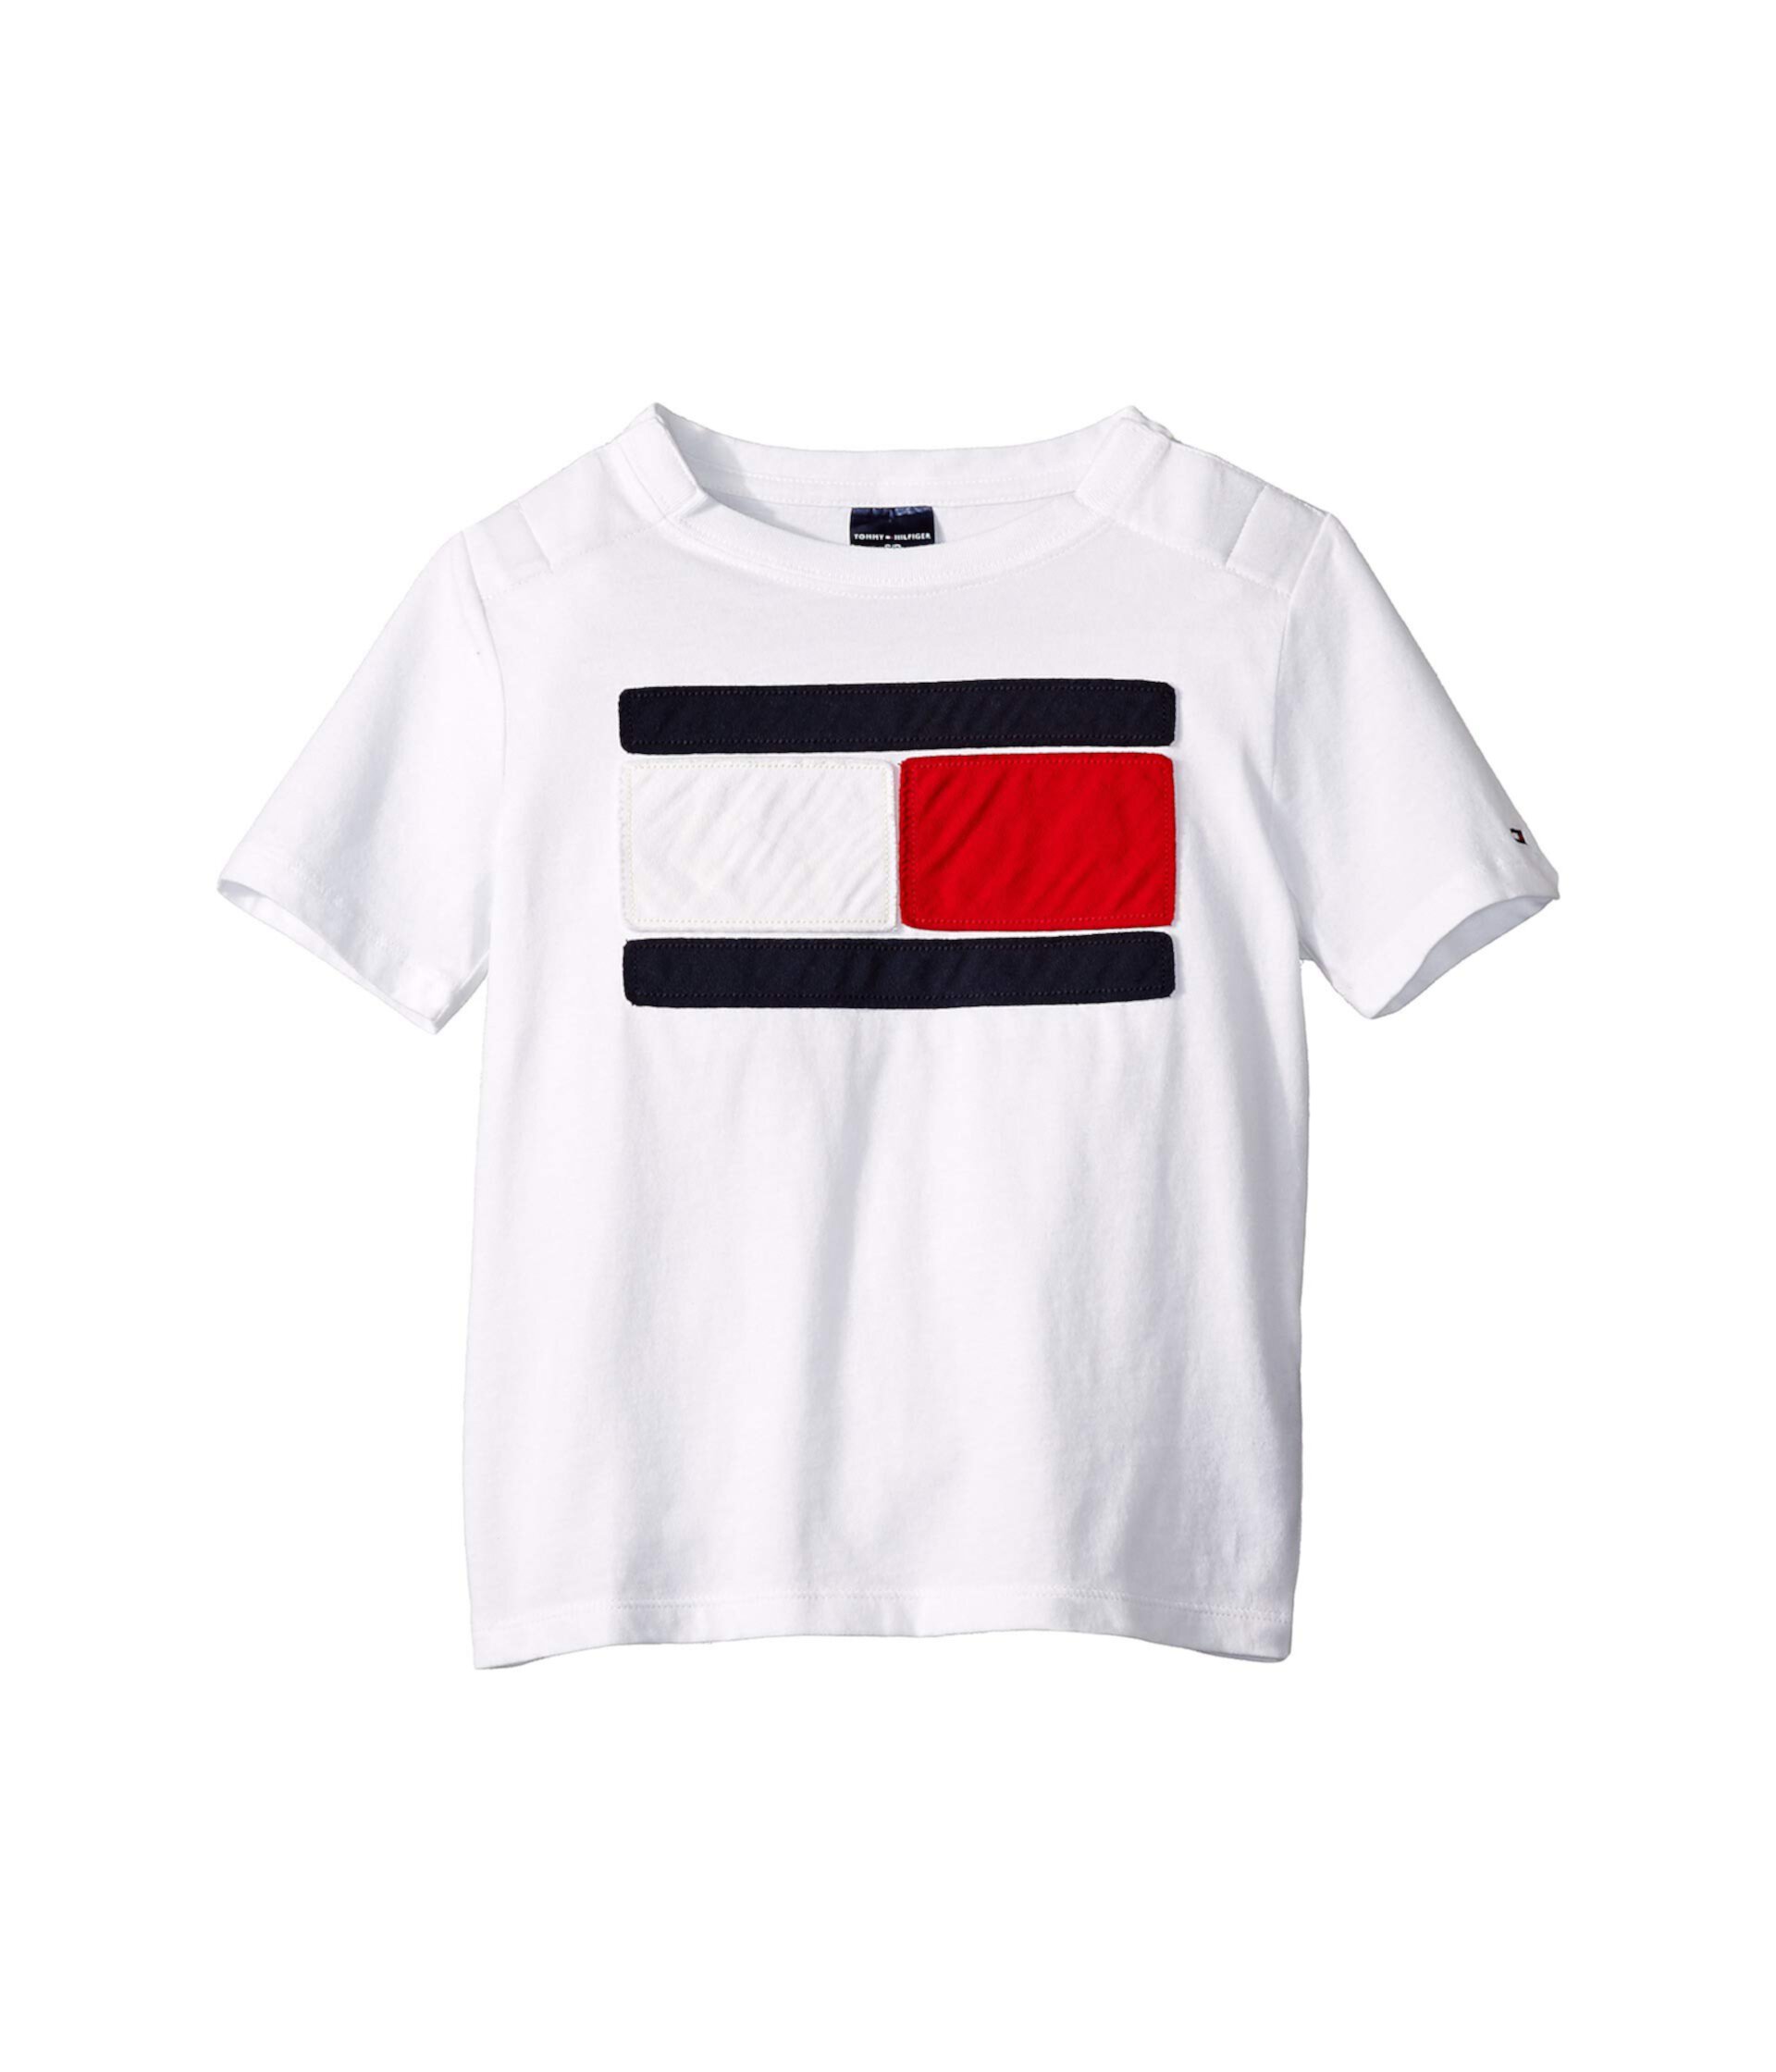 Модная футболка Riley с короткими рукавами (для маленьких и больших детей) Tommy Hilfiger Adaptive